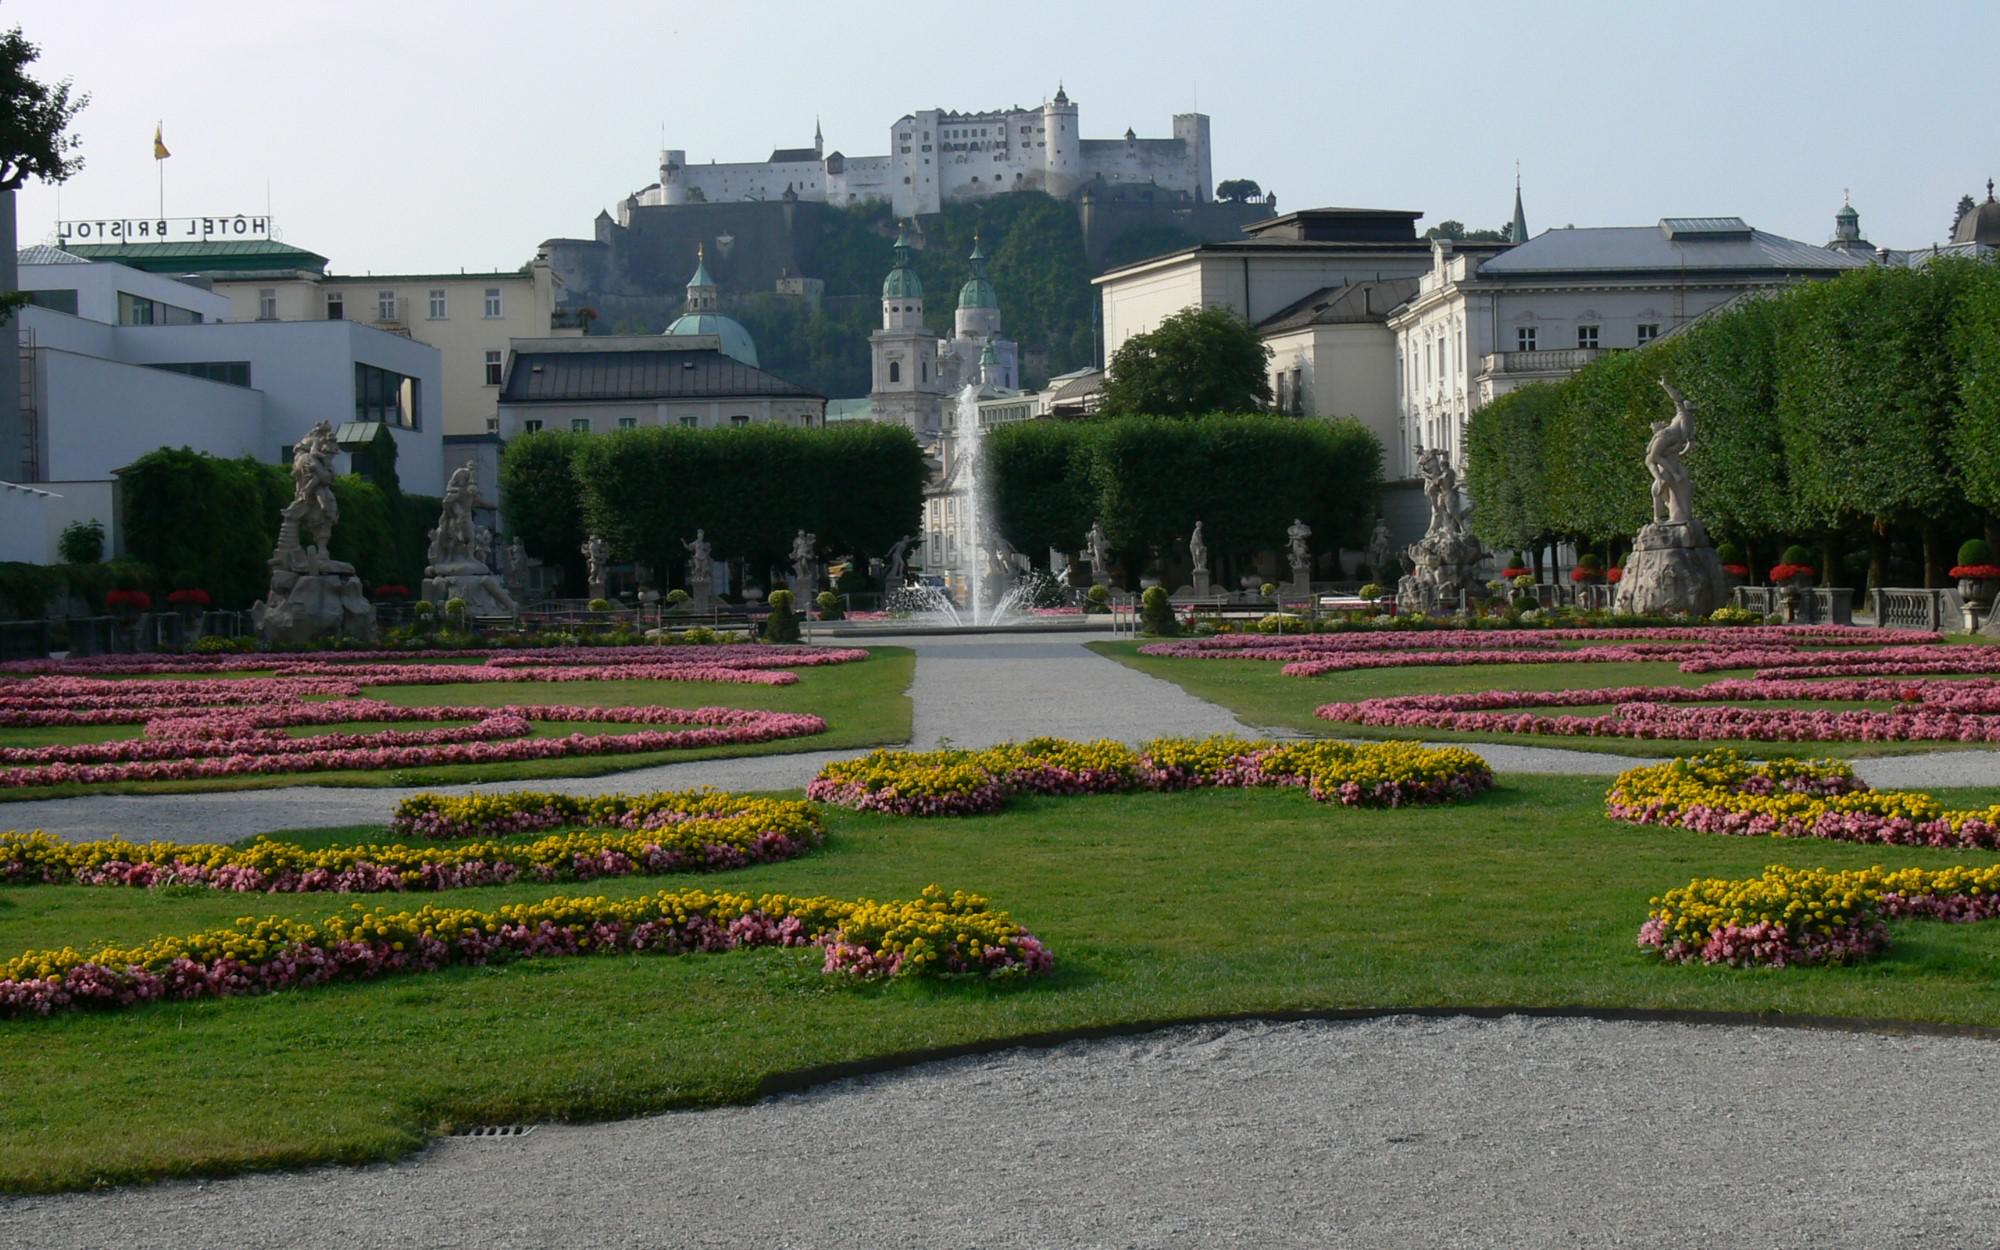 Immobilien - Hotelprojekt in Bestlage zu kaufen in Salzburg, Salzburg